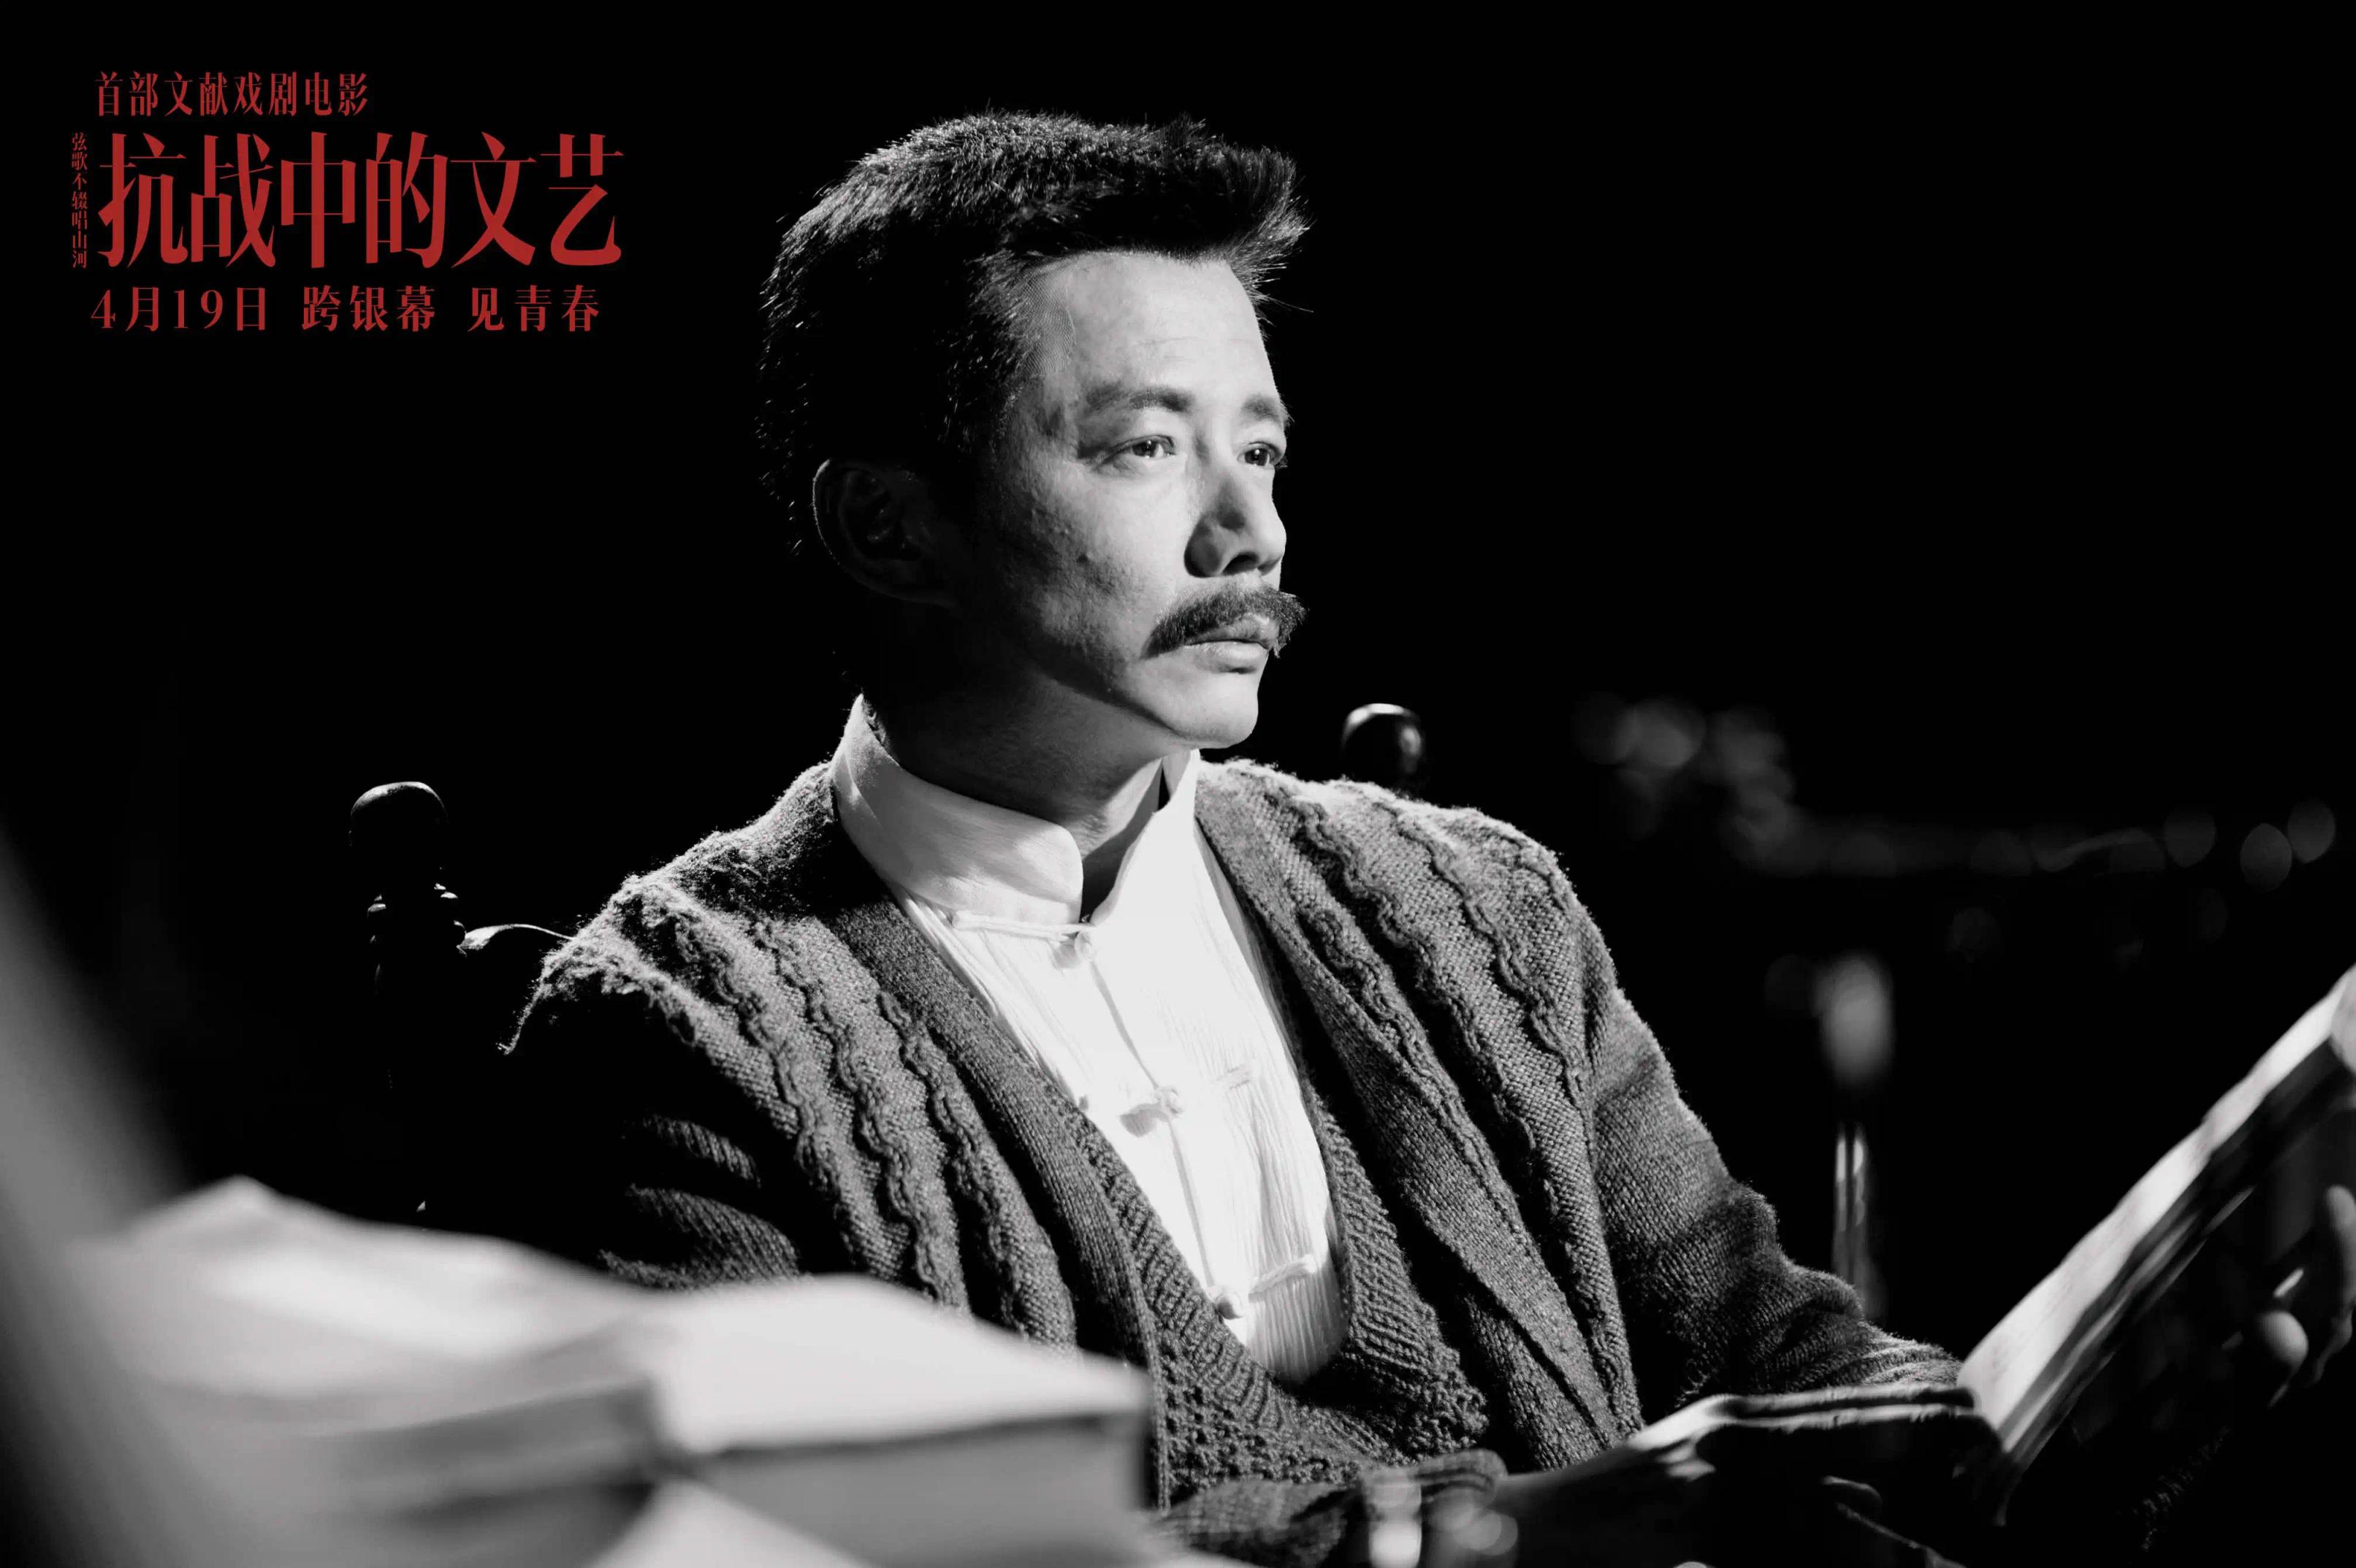 国话首部文献戏剧电影《抗战中的文艺》4月19日上映